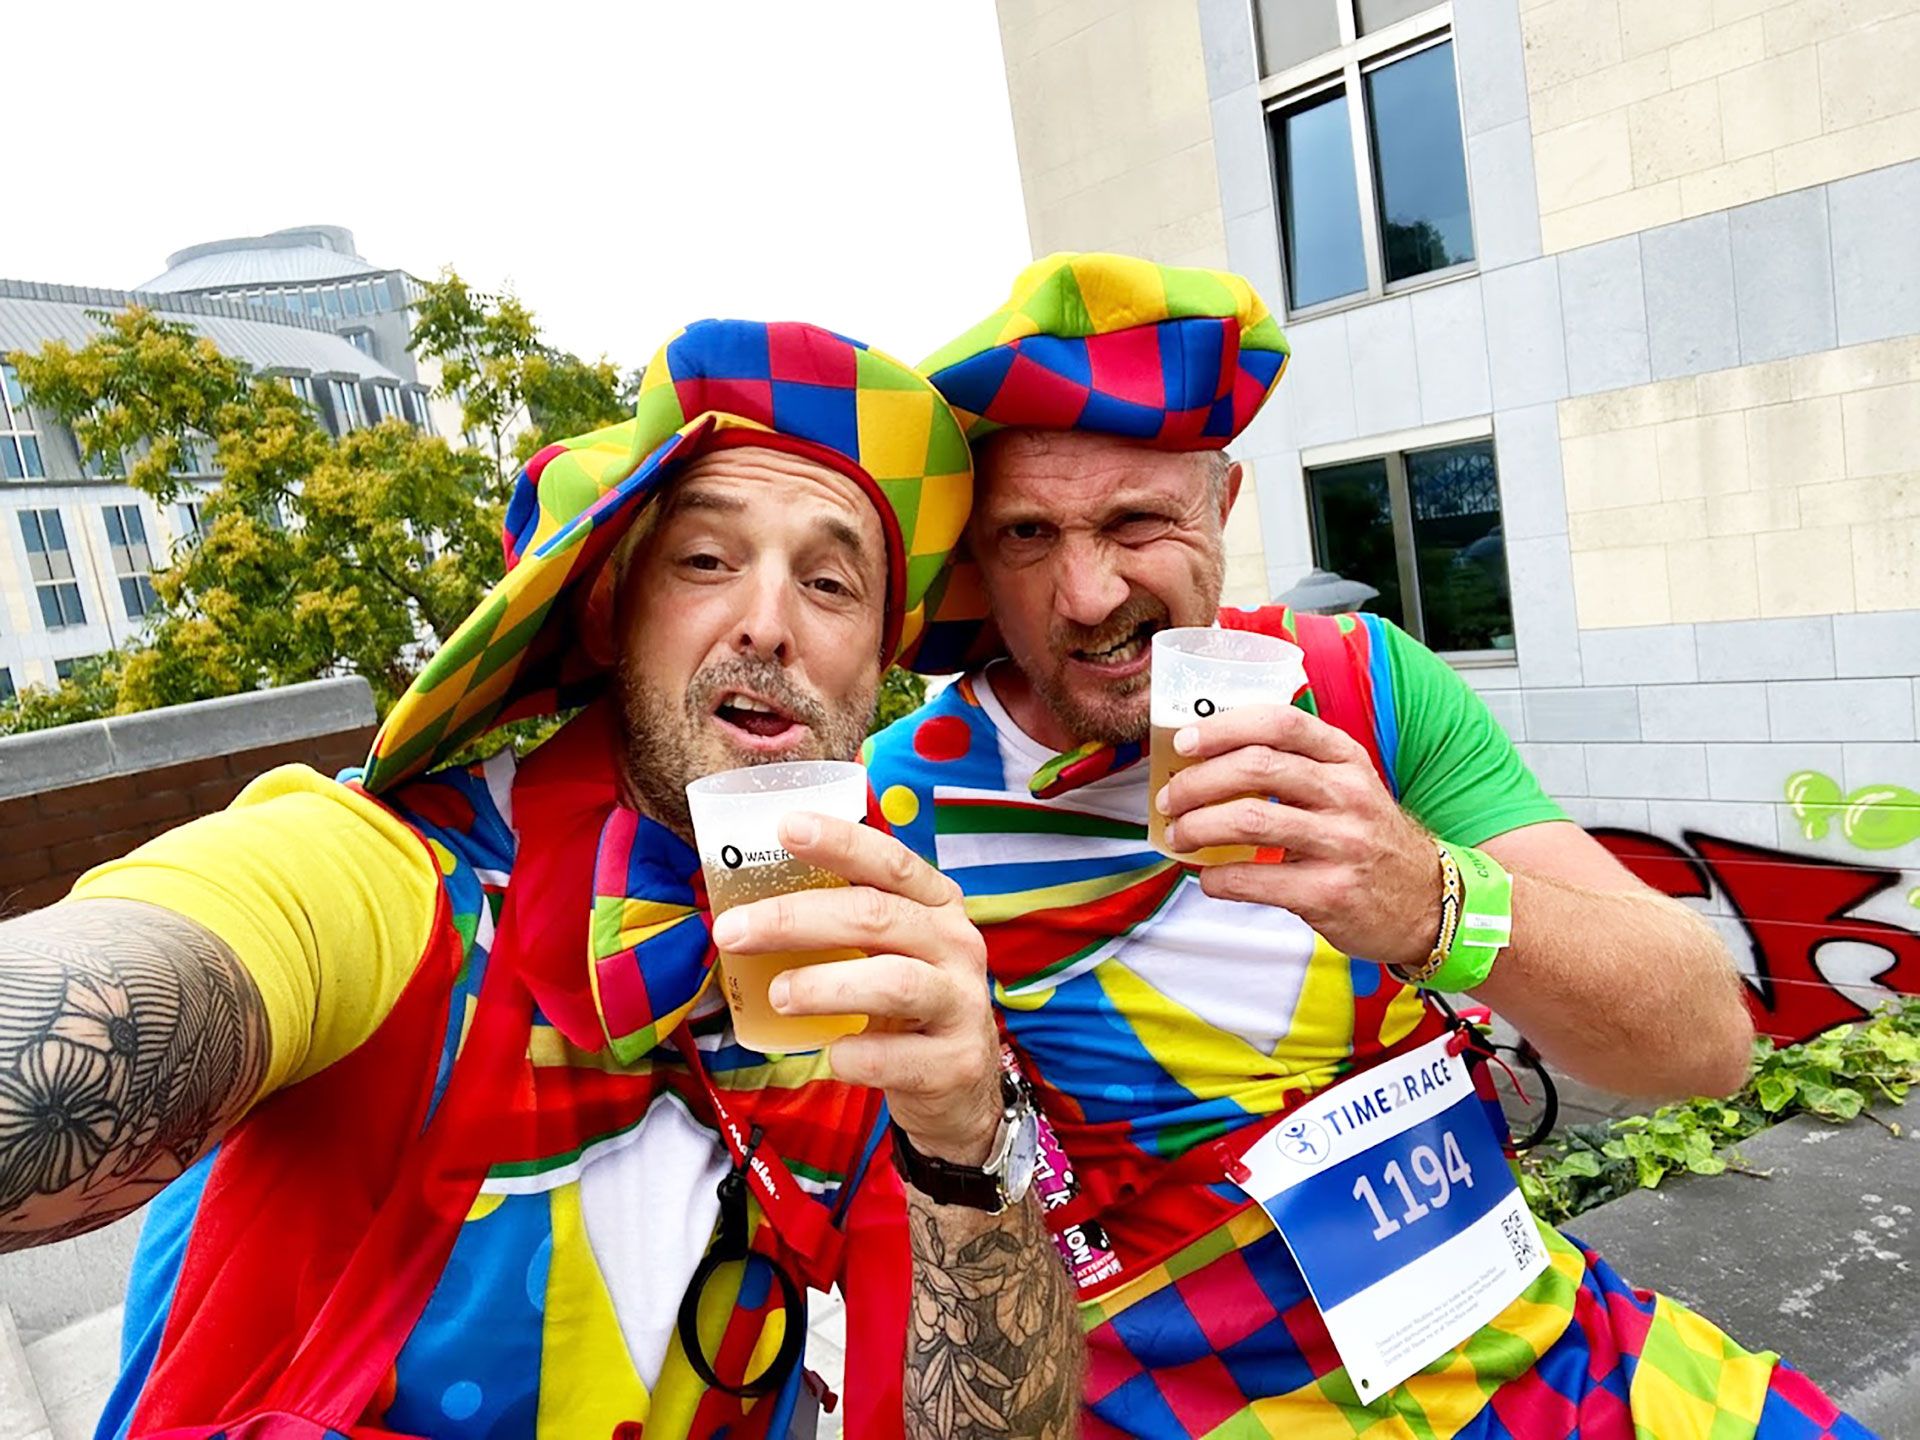 De bier marathon in belgie